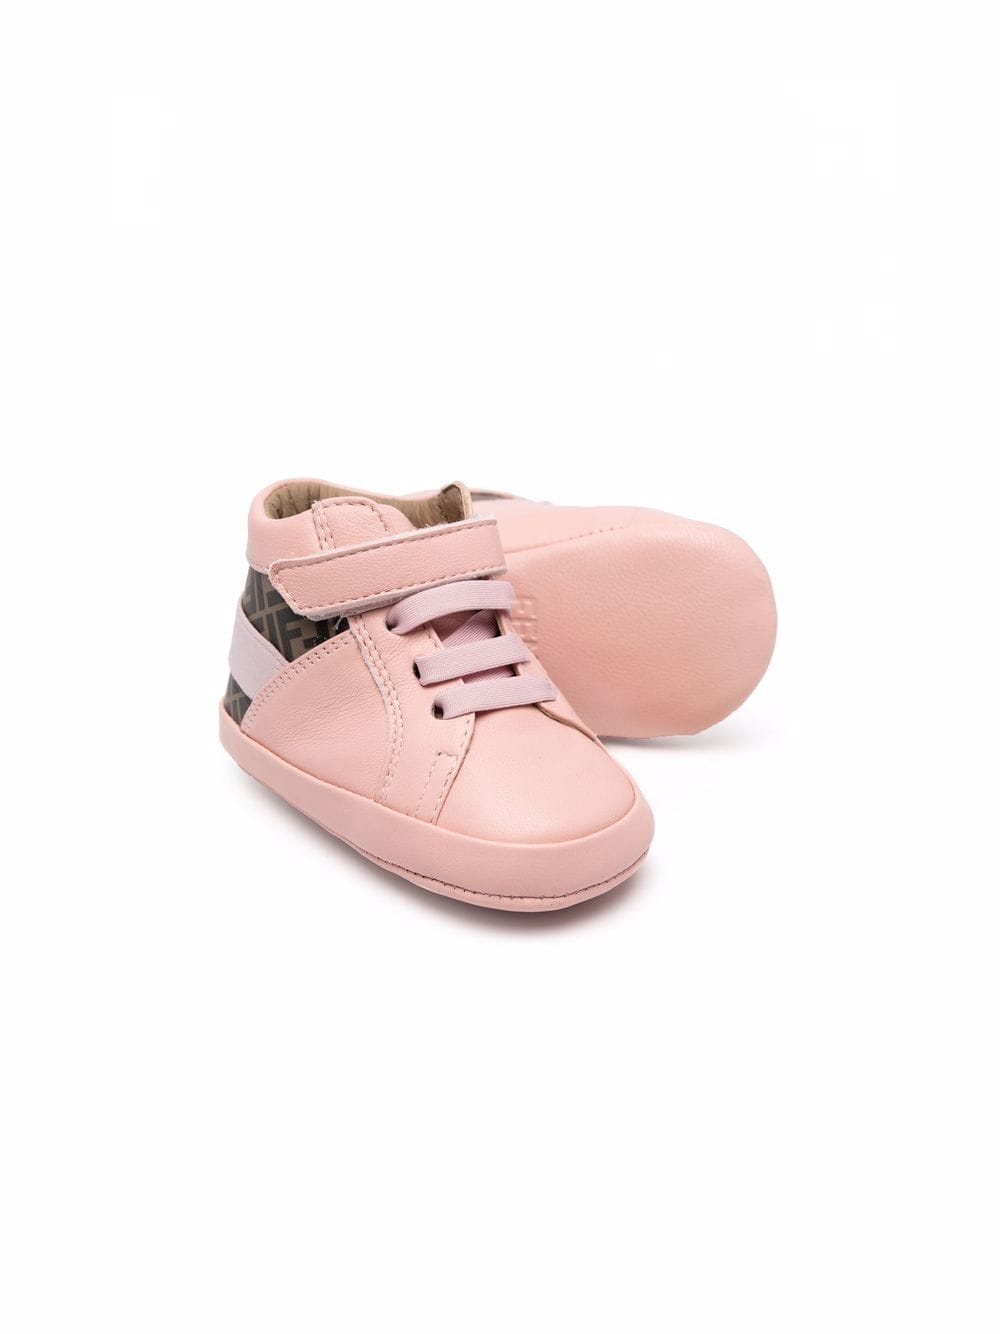 Monogrammed high-top baby sneakers